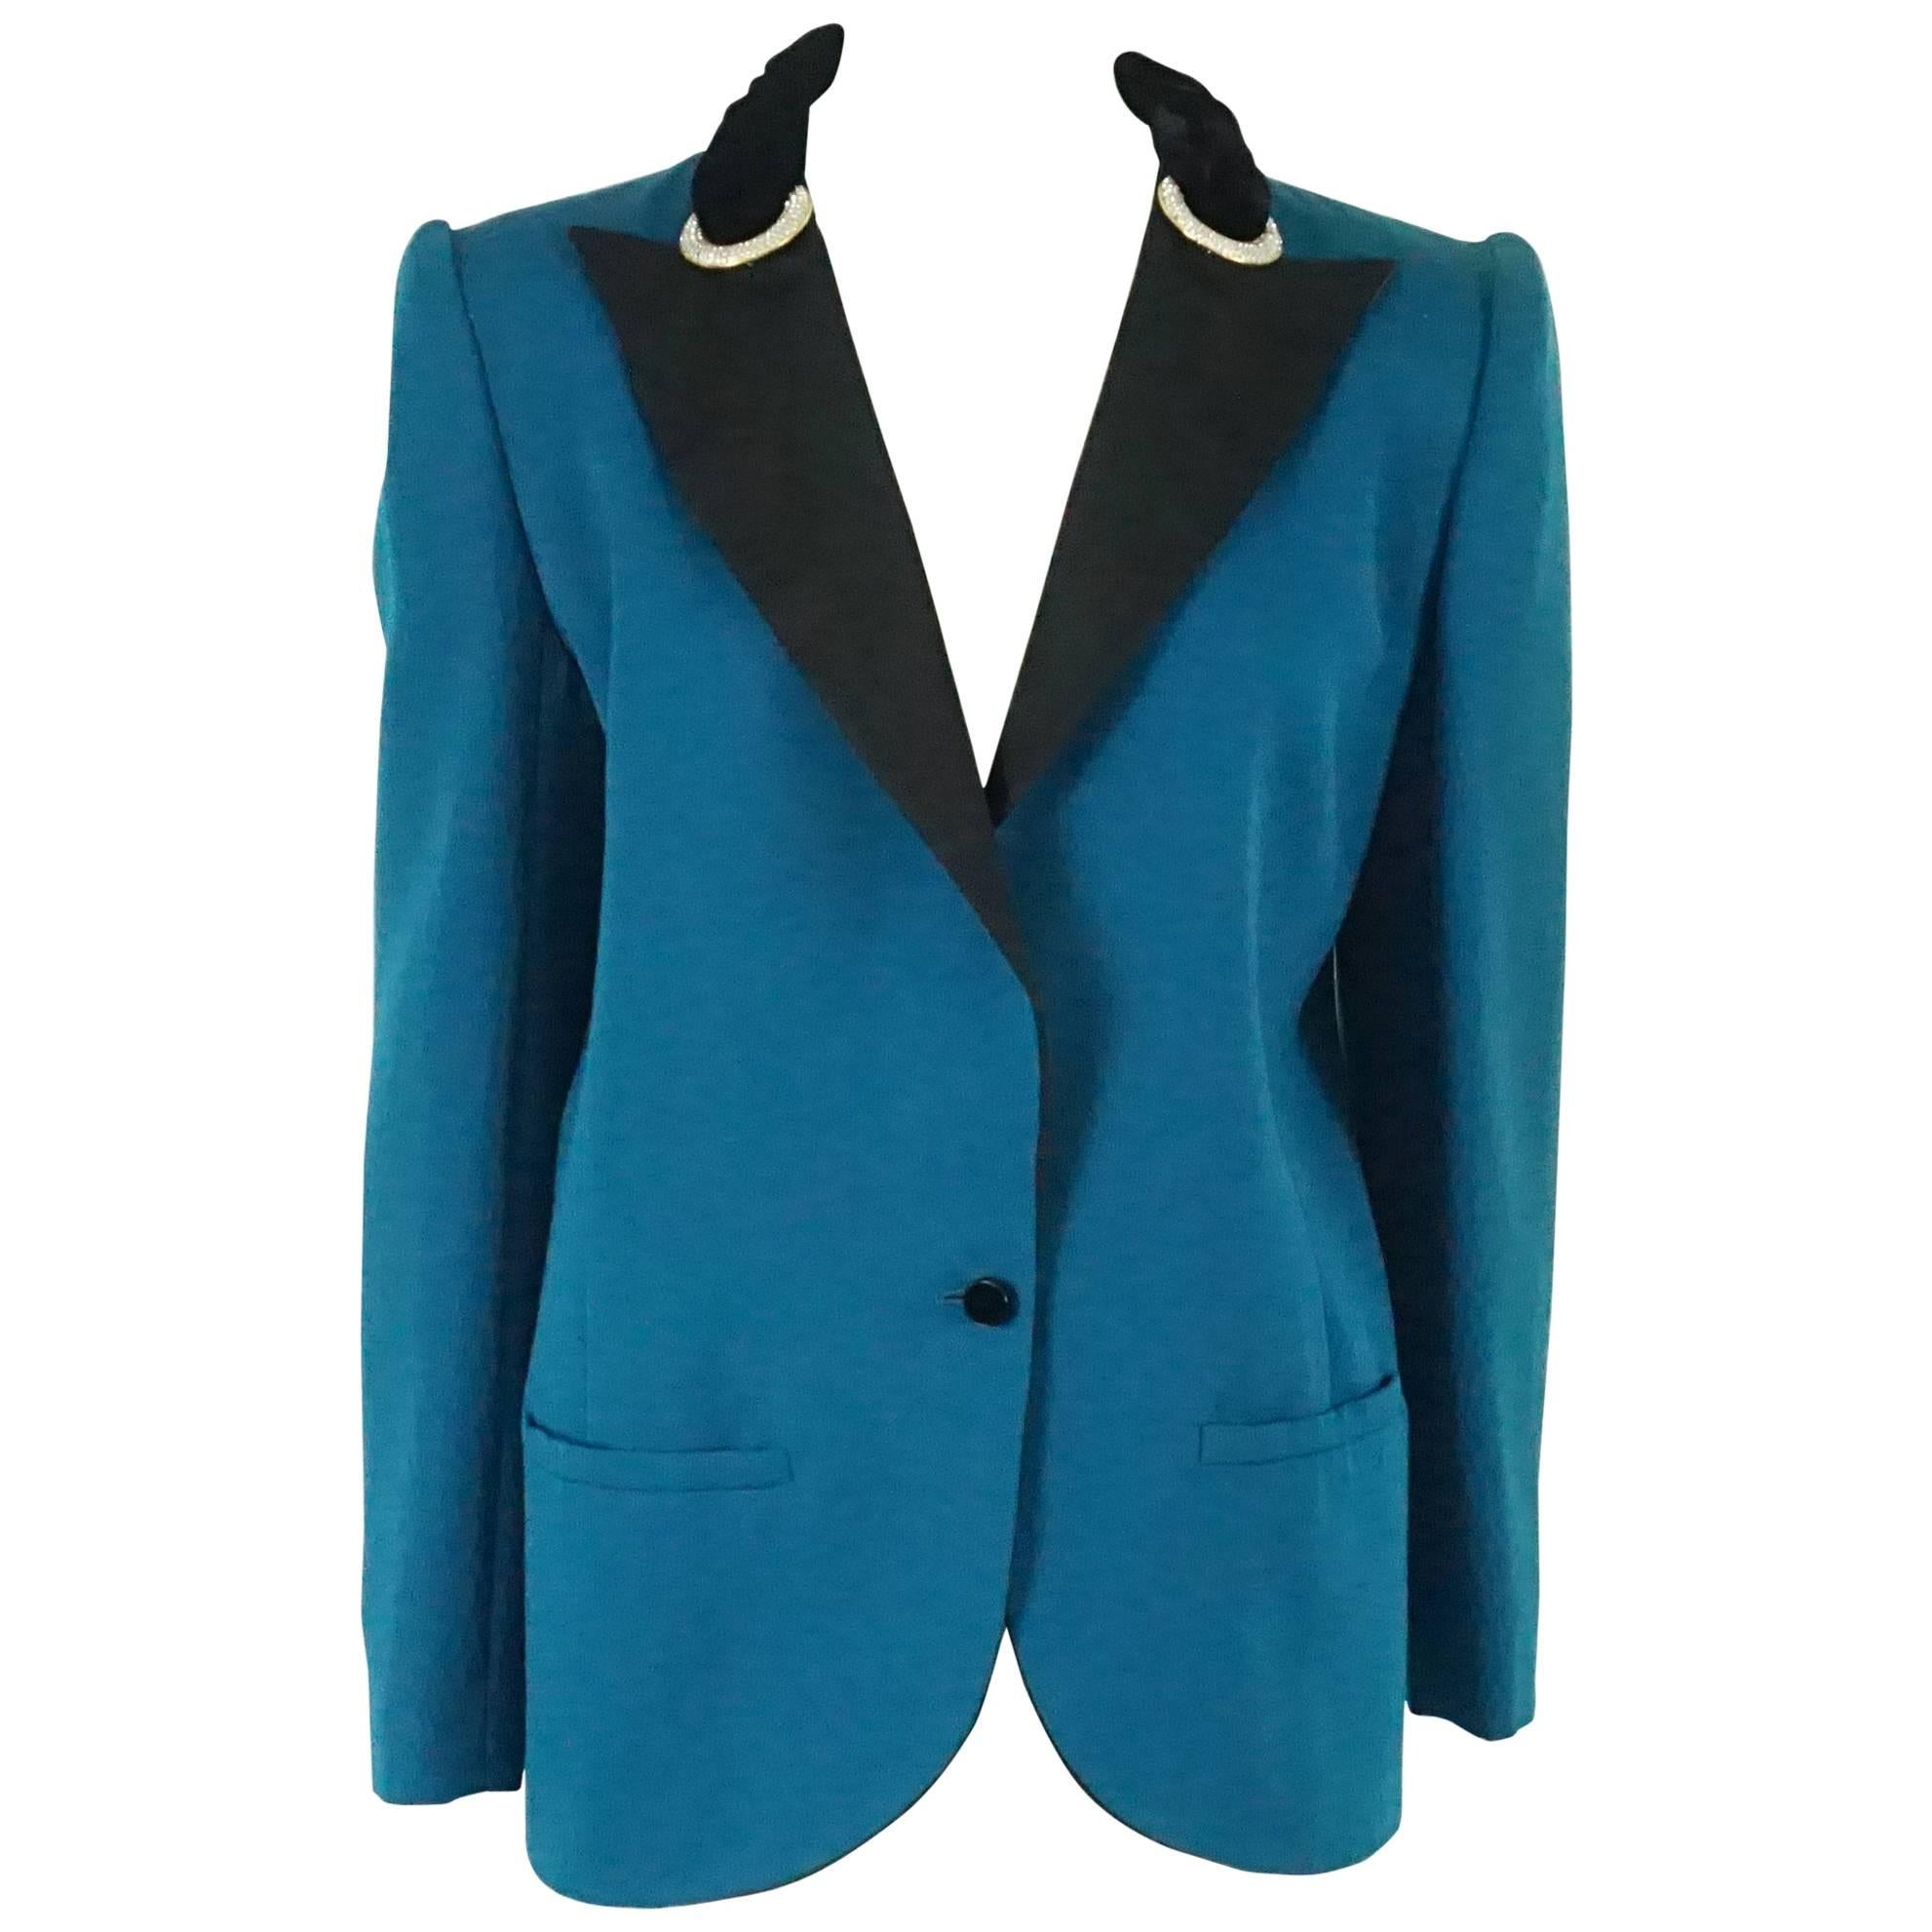 Valentino - Veste de style smoking en laine légère turquoise des années 1980 - Taille 8